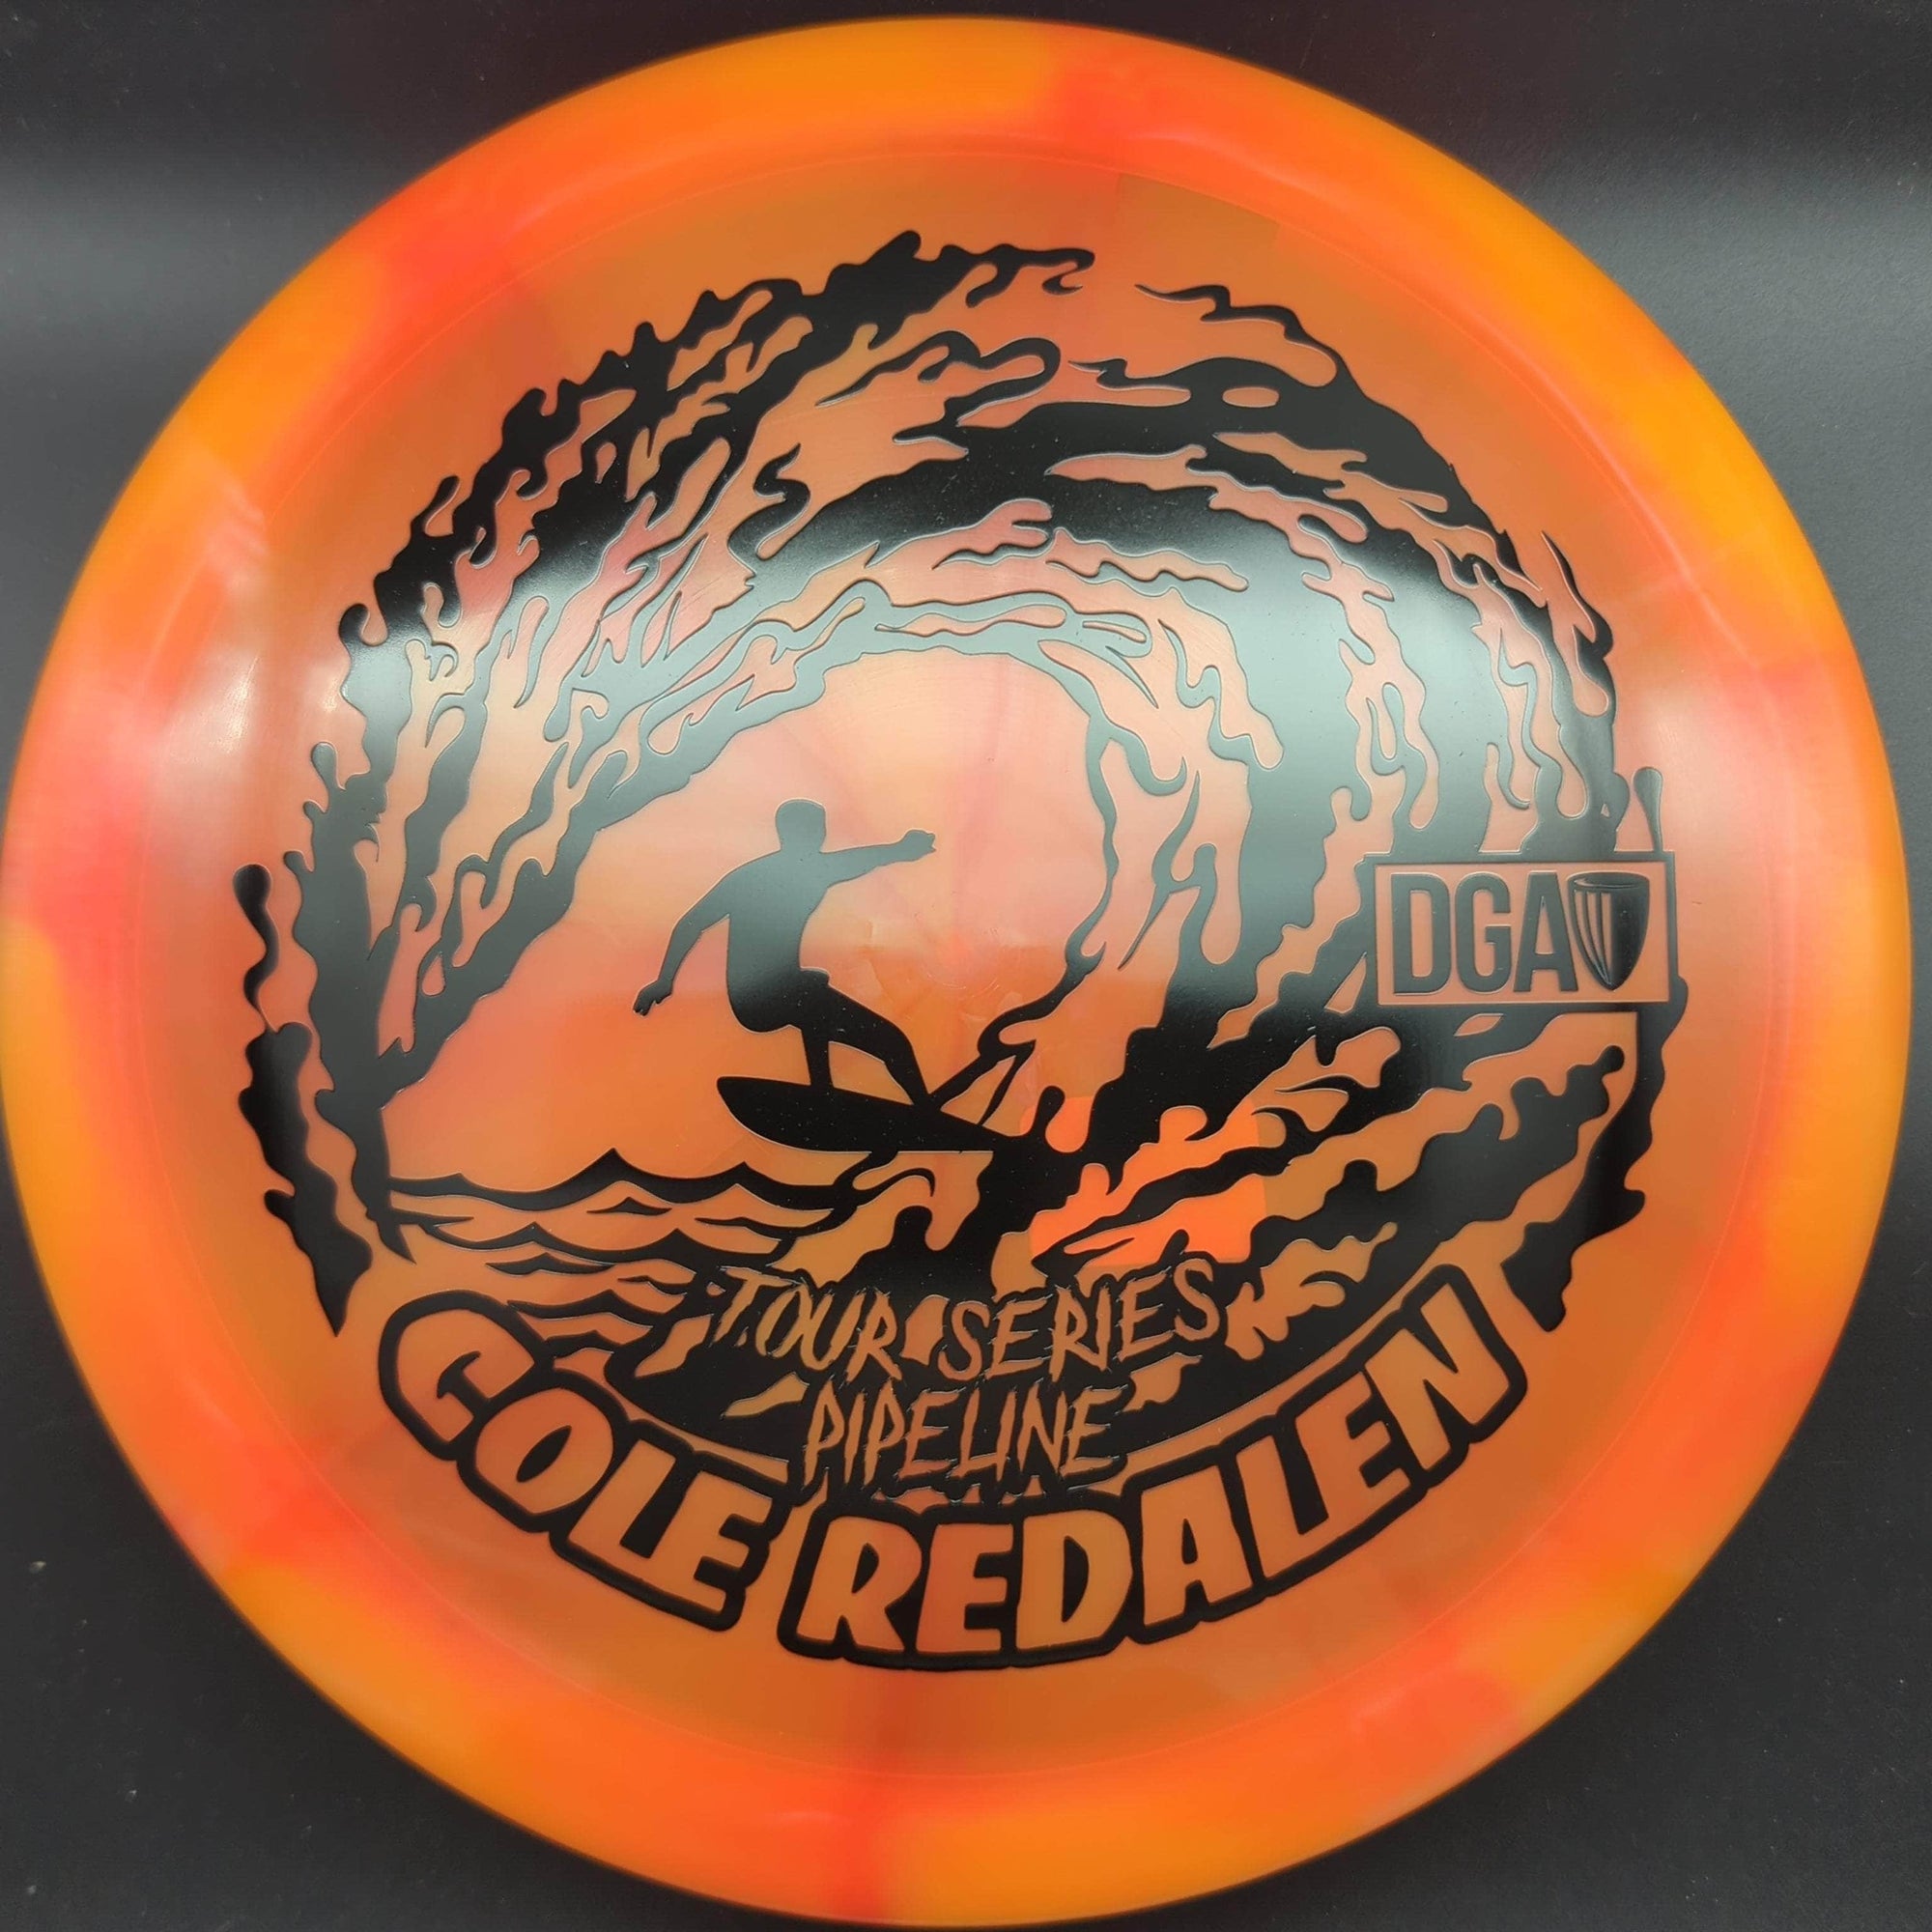 DGA Fairway Driver Orange/Red Black Stamp 174g Pipeline, Tour Series Swirly, Cole Redalen 2023